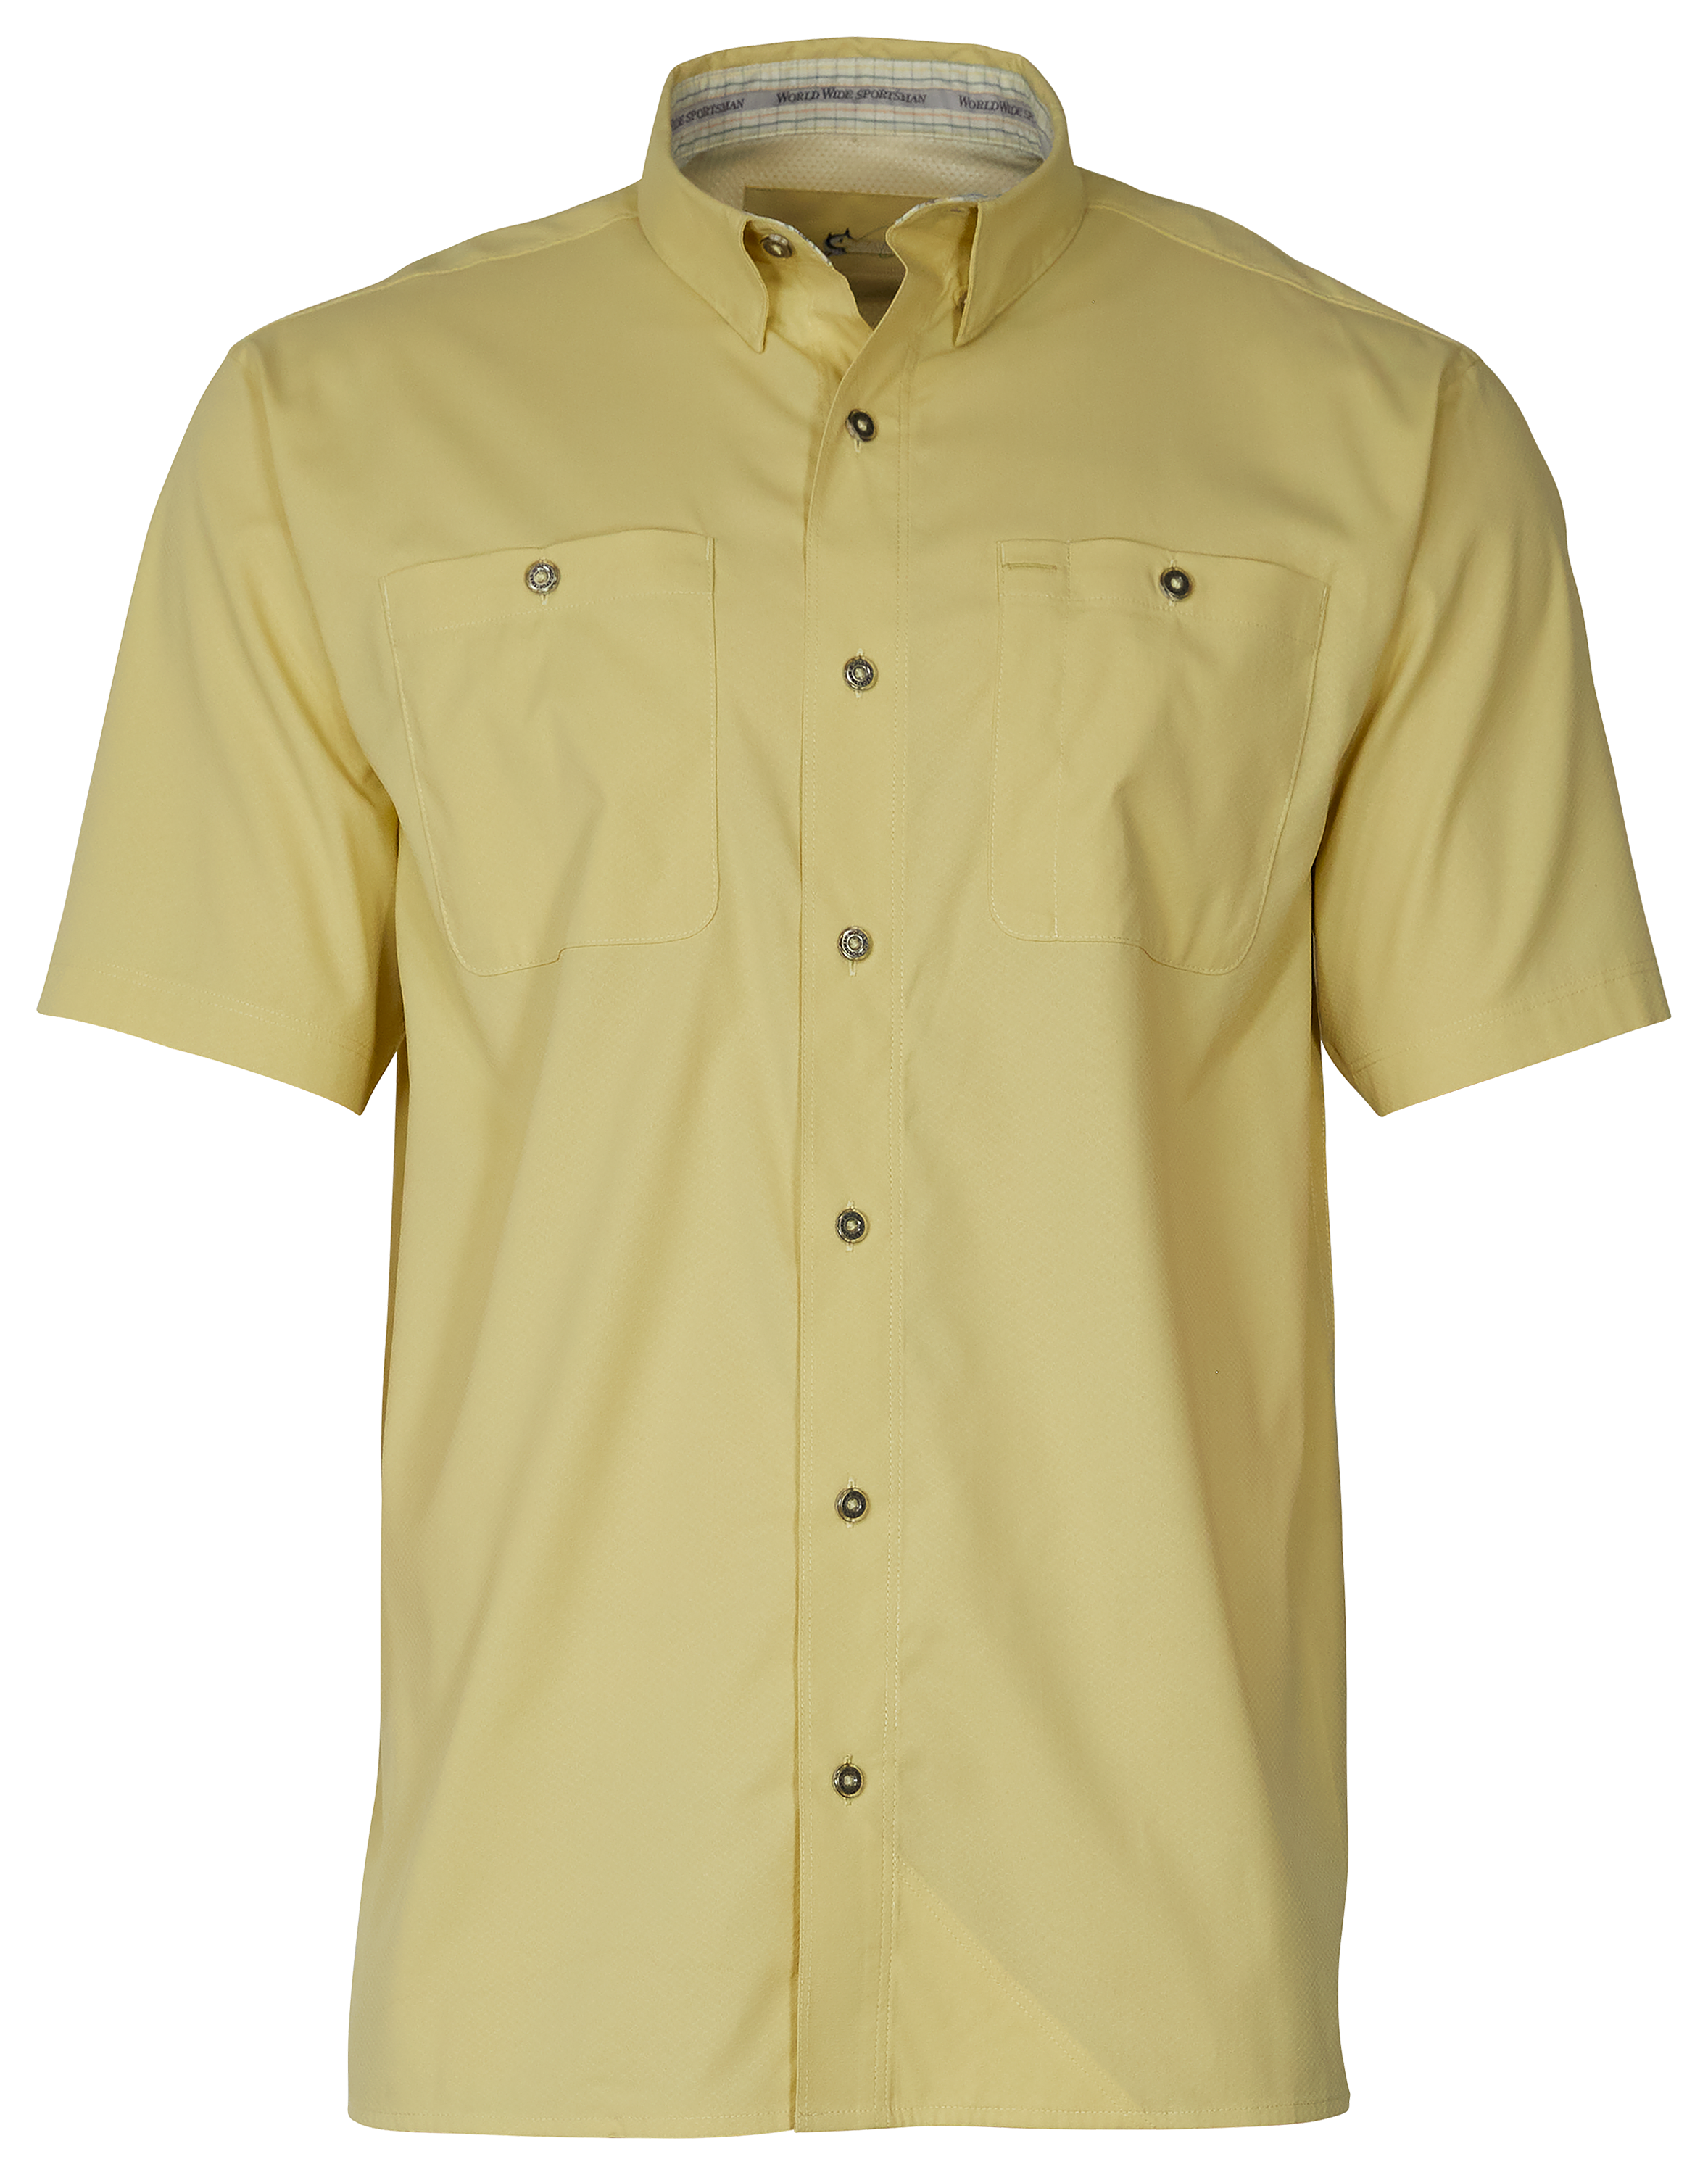 World Wide Sportsman Ultimate Angler Solid Short-Sleeve Shirt for Men - Golden Mist - S